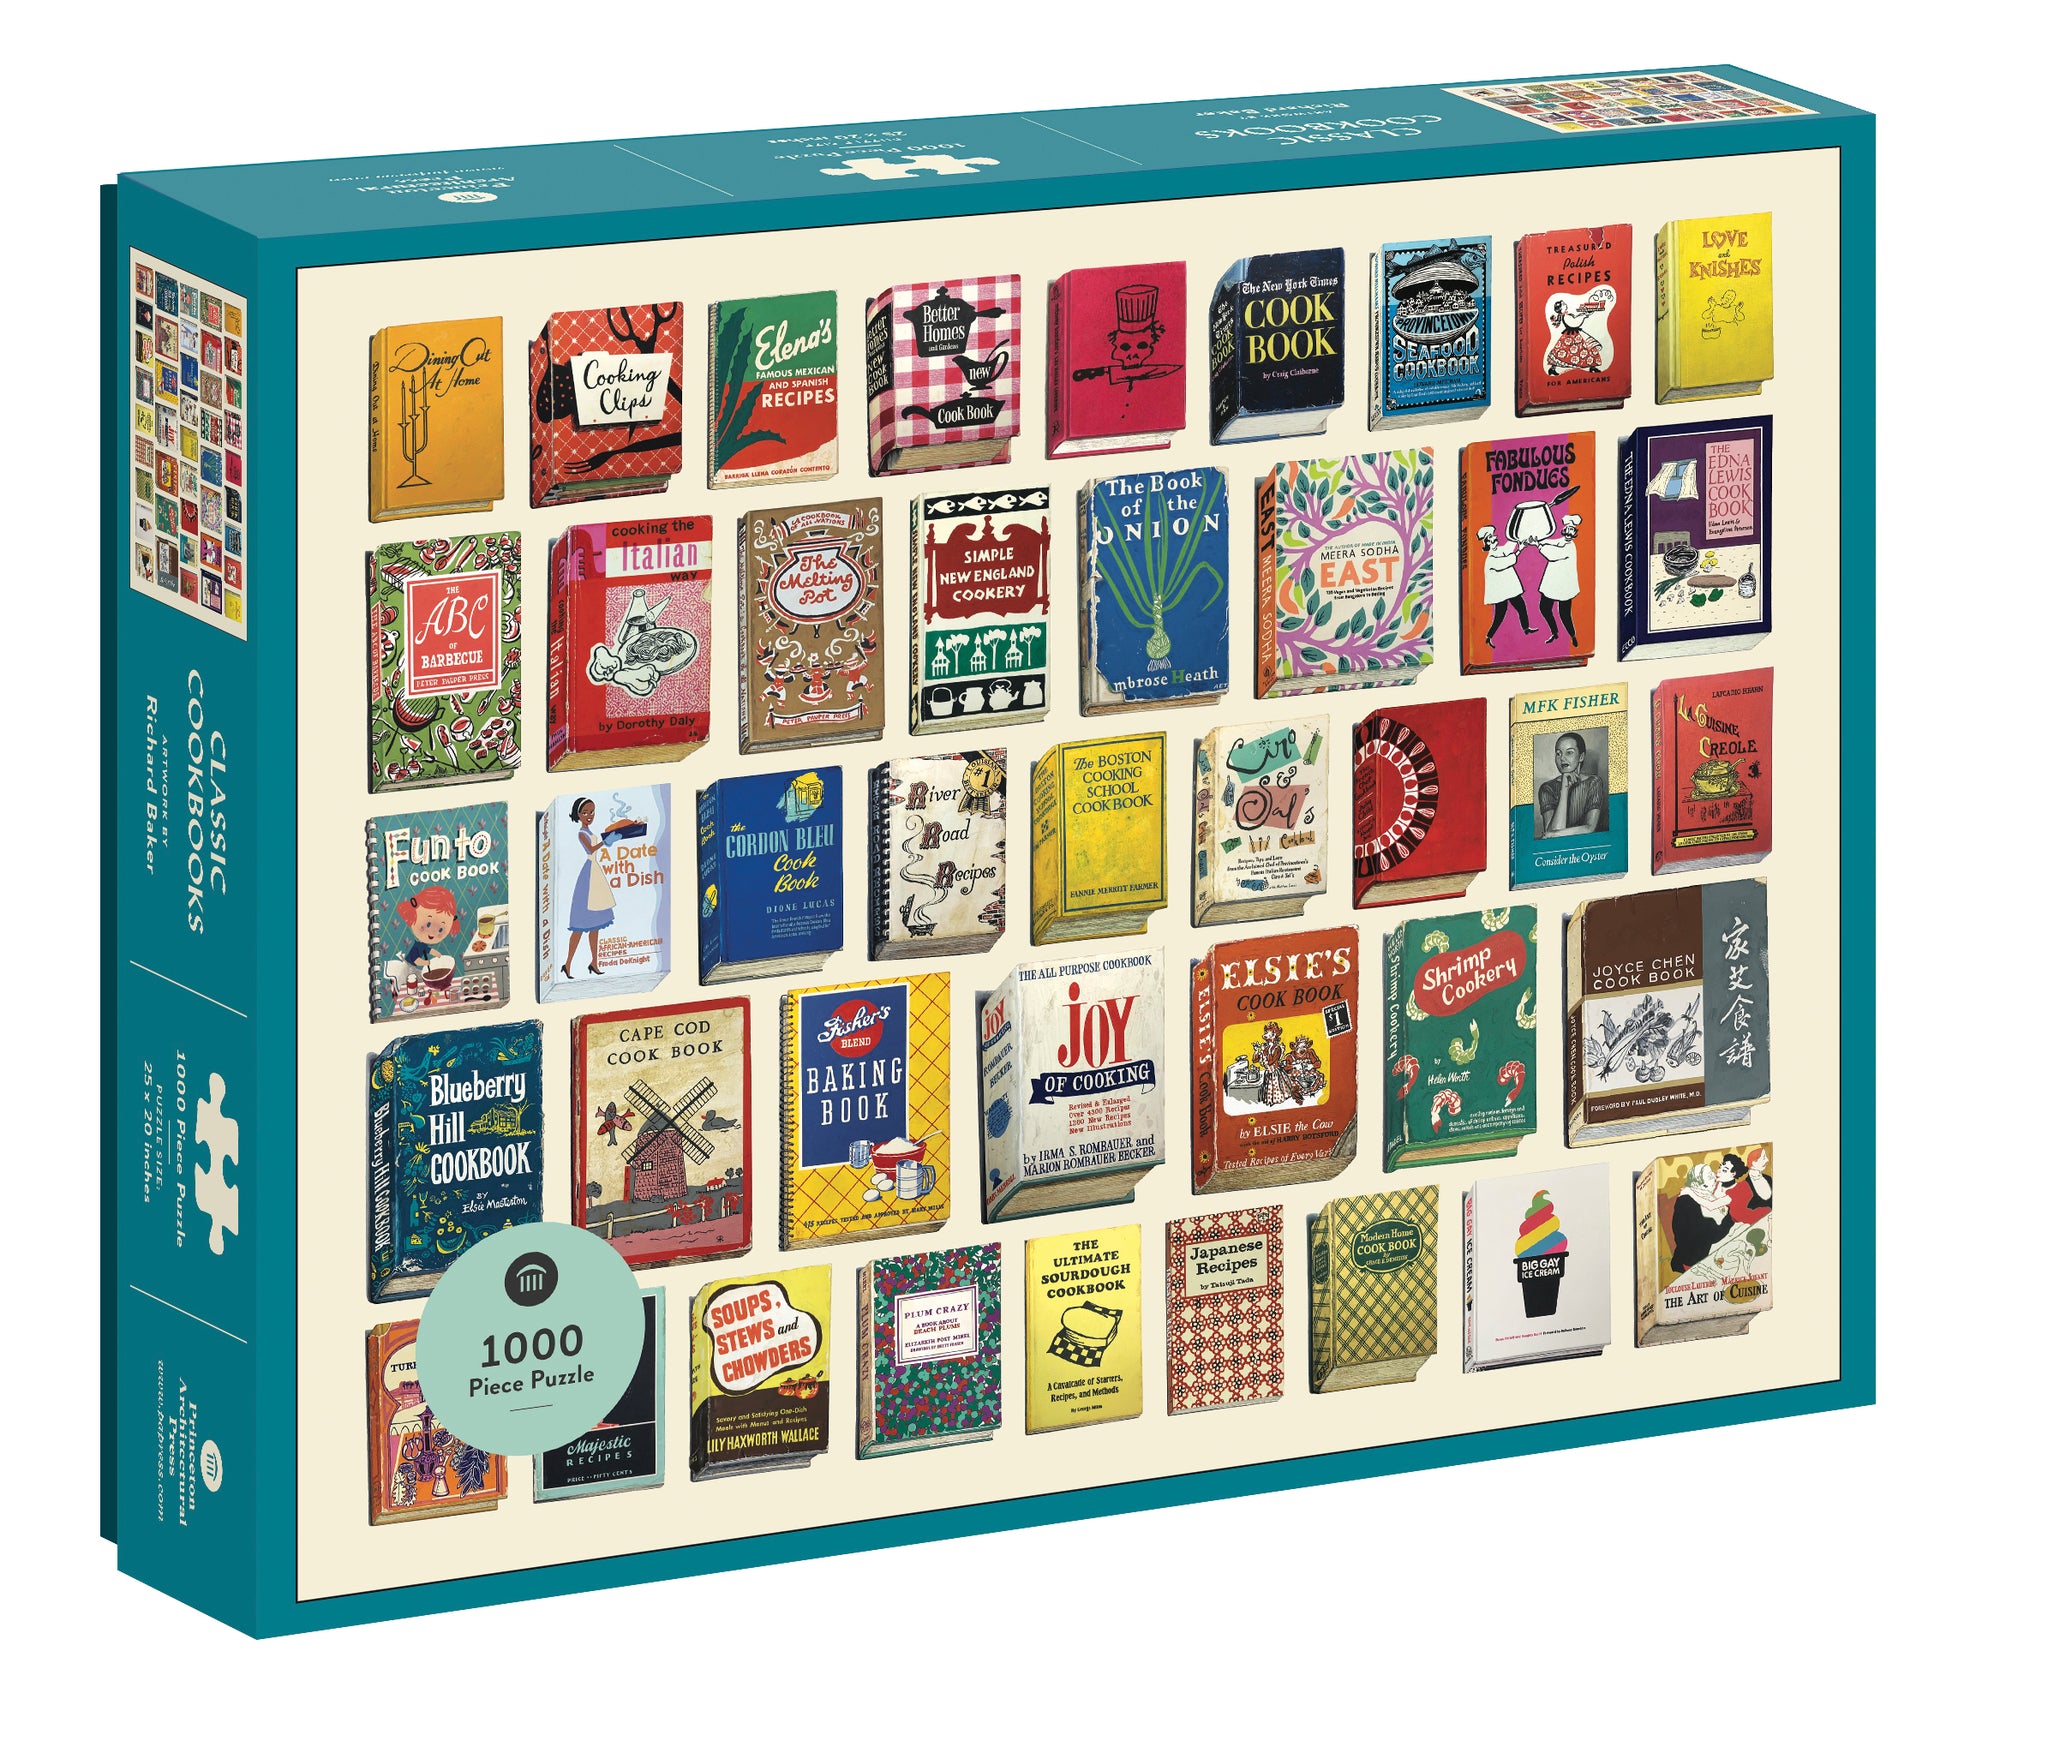 Classic Cookbooks: 1000 Piece Puzzle cover